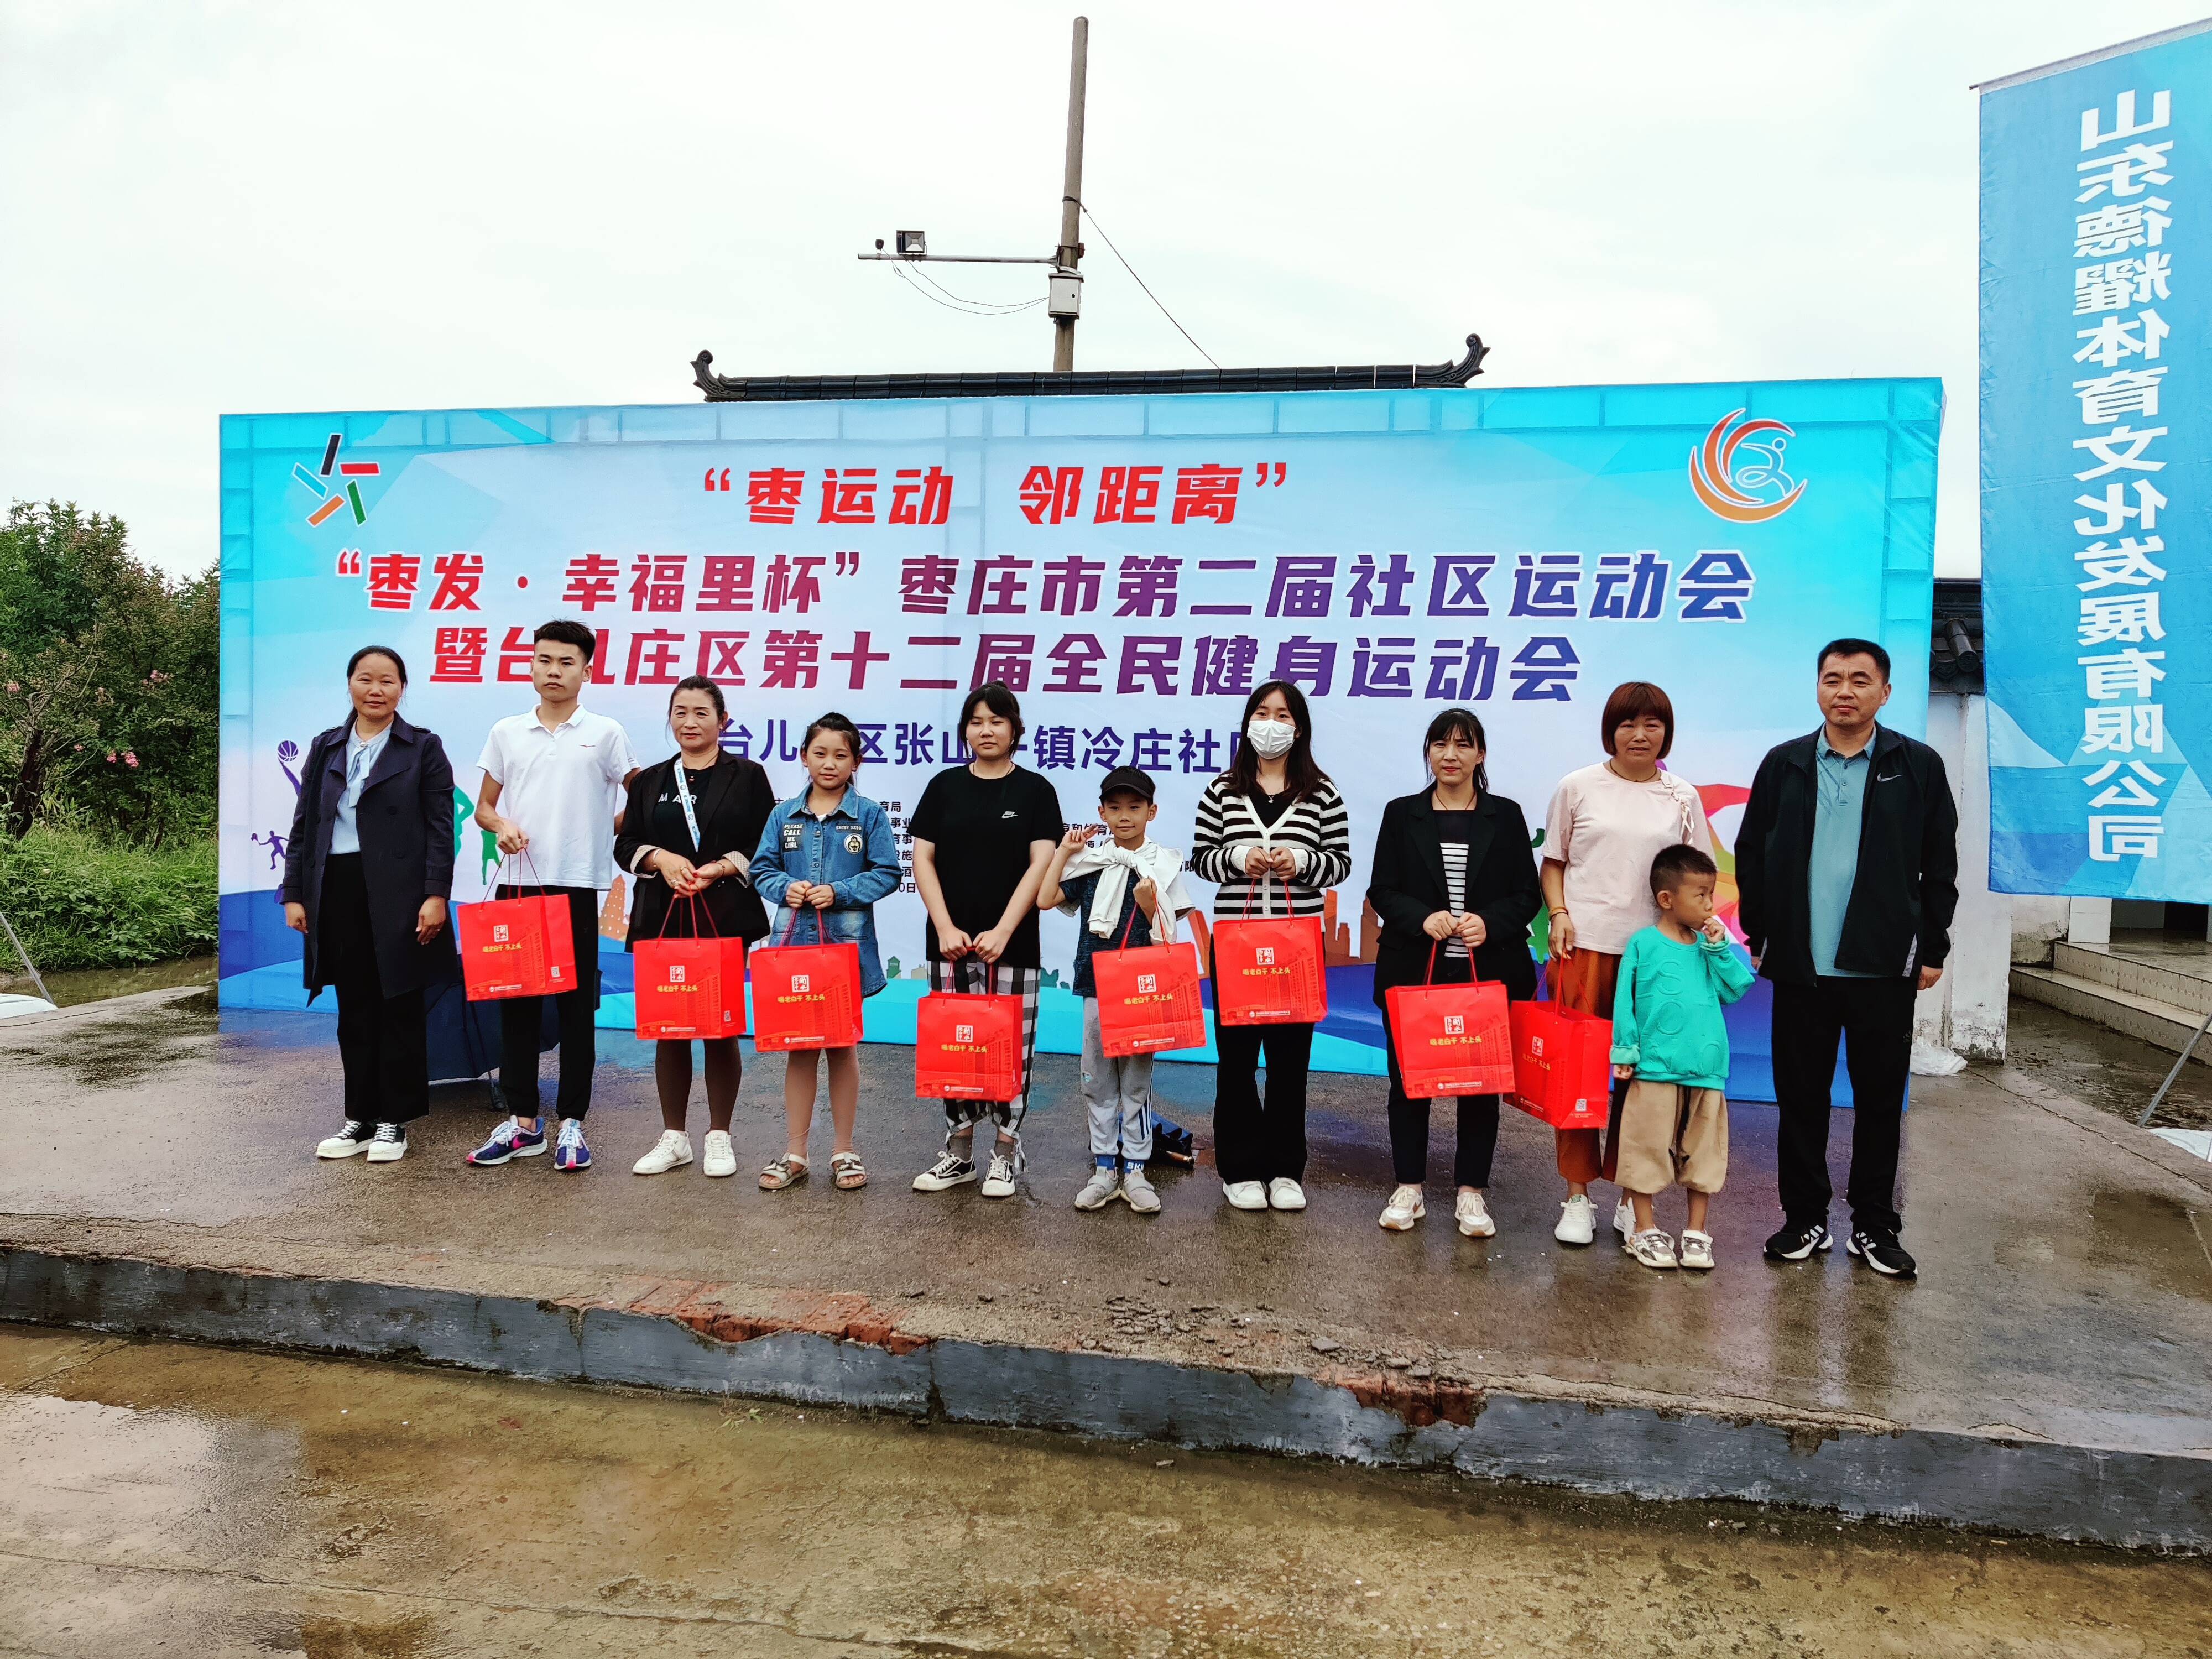 幸福再出发！枣庄市第二届社区运动会在台儿庄区张山子镇顺利举行